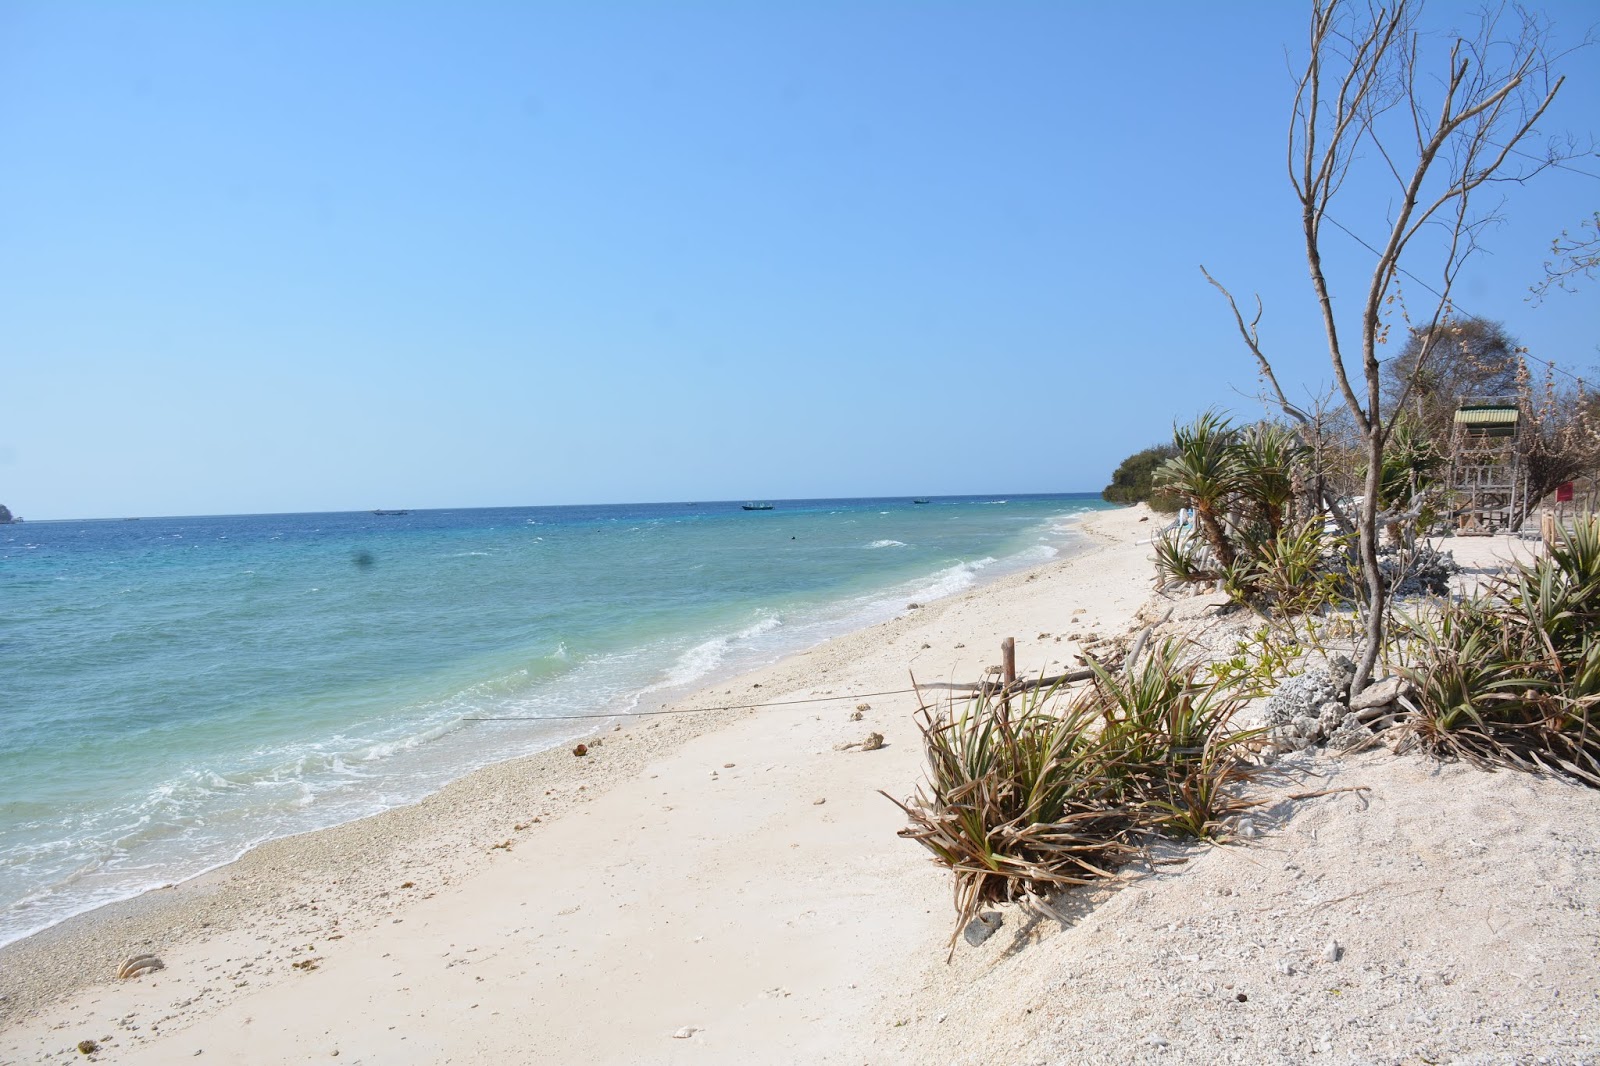 Fotografie cu Gili Meno Bask Nest Beach - locul popular printre cunoscătorii de relaxare